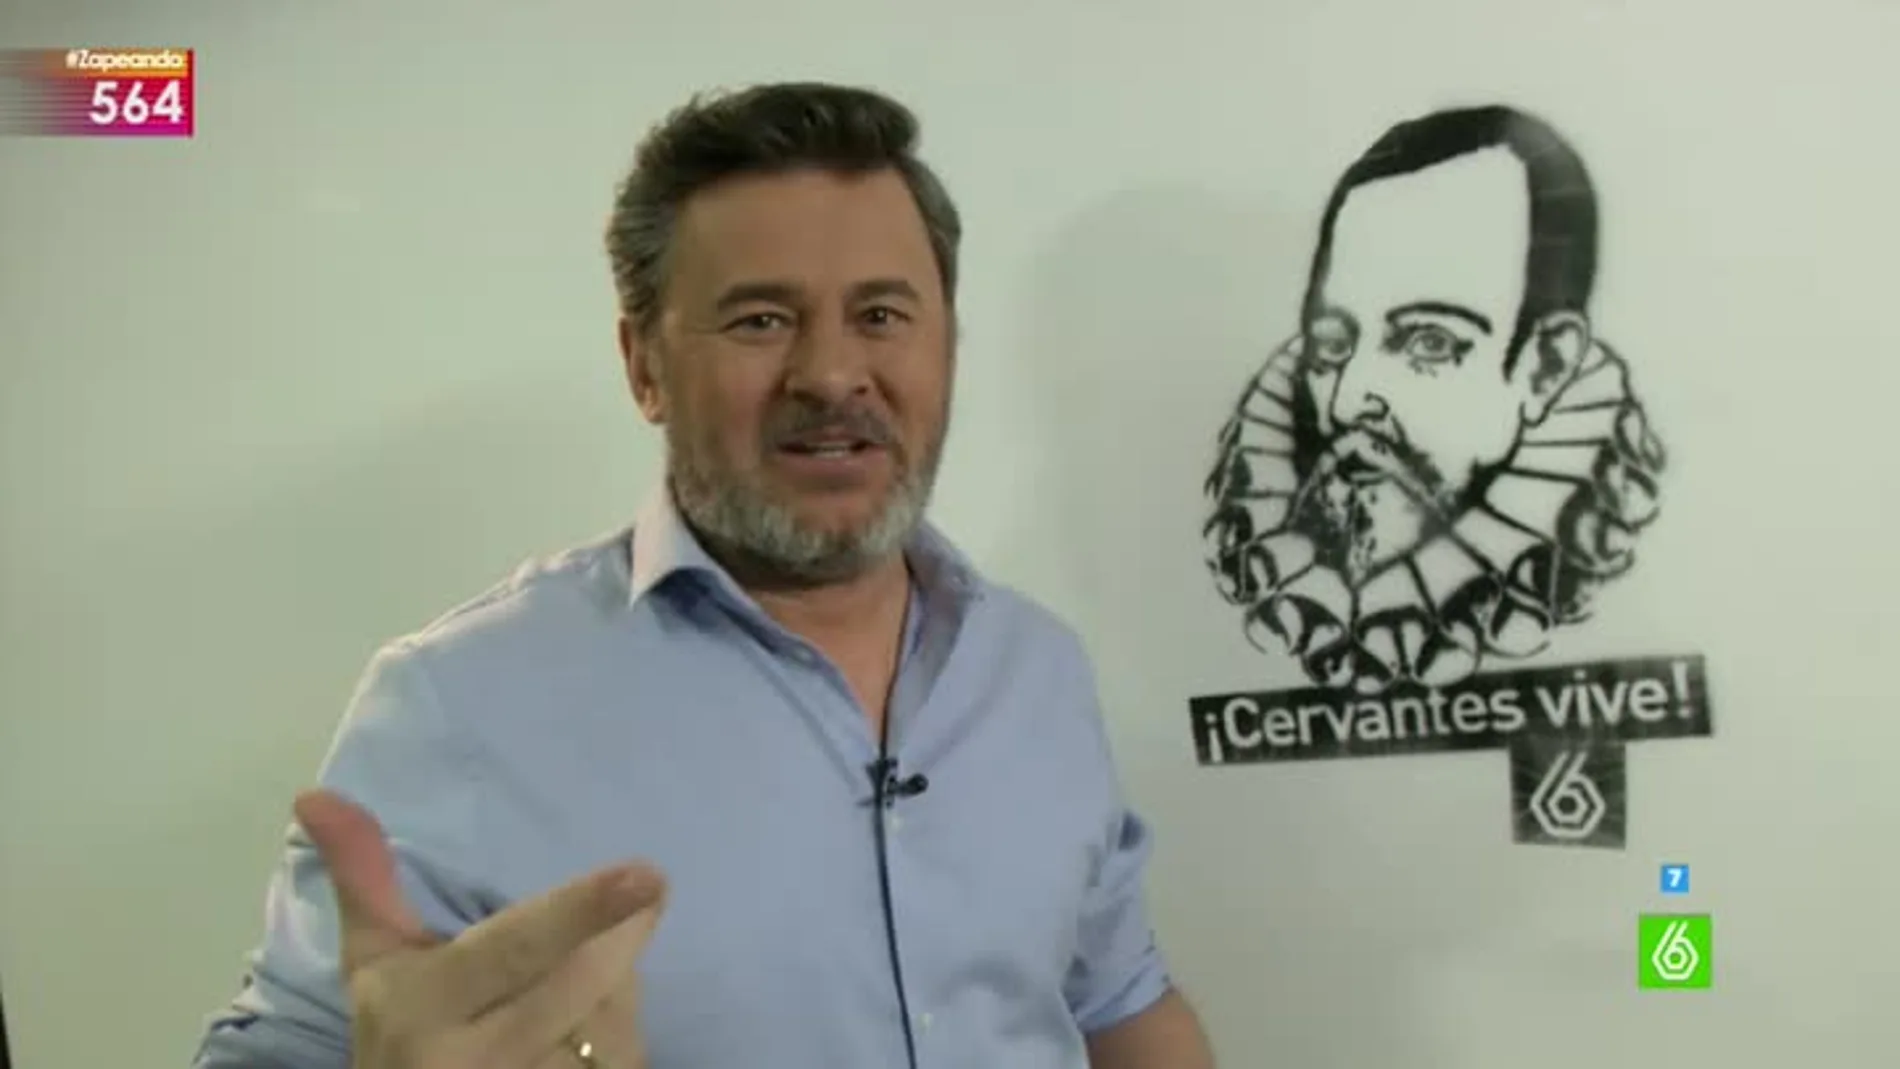 Zapeando celebra el 400 aniversario de la muerte de Cervantes con un grafiti en la redacción